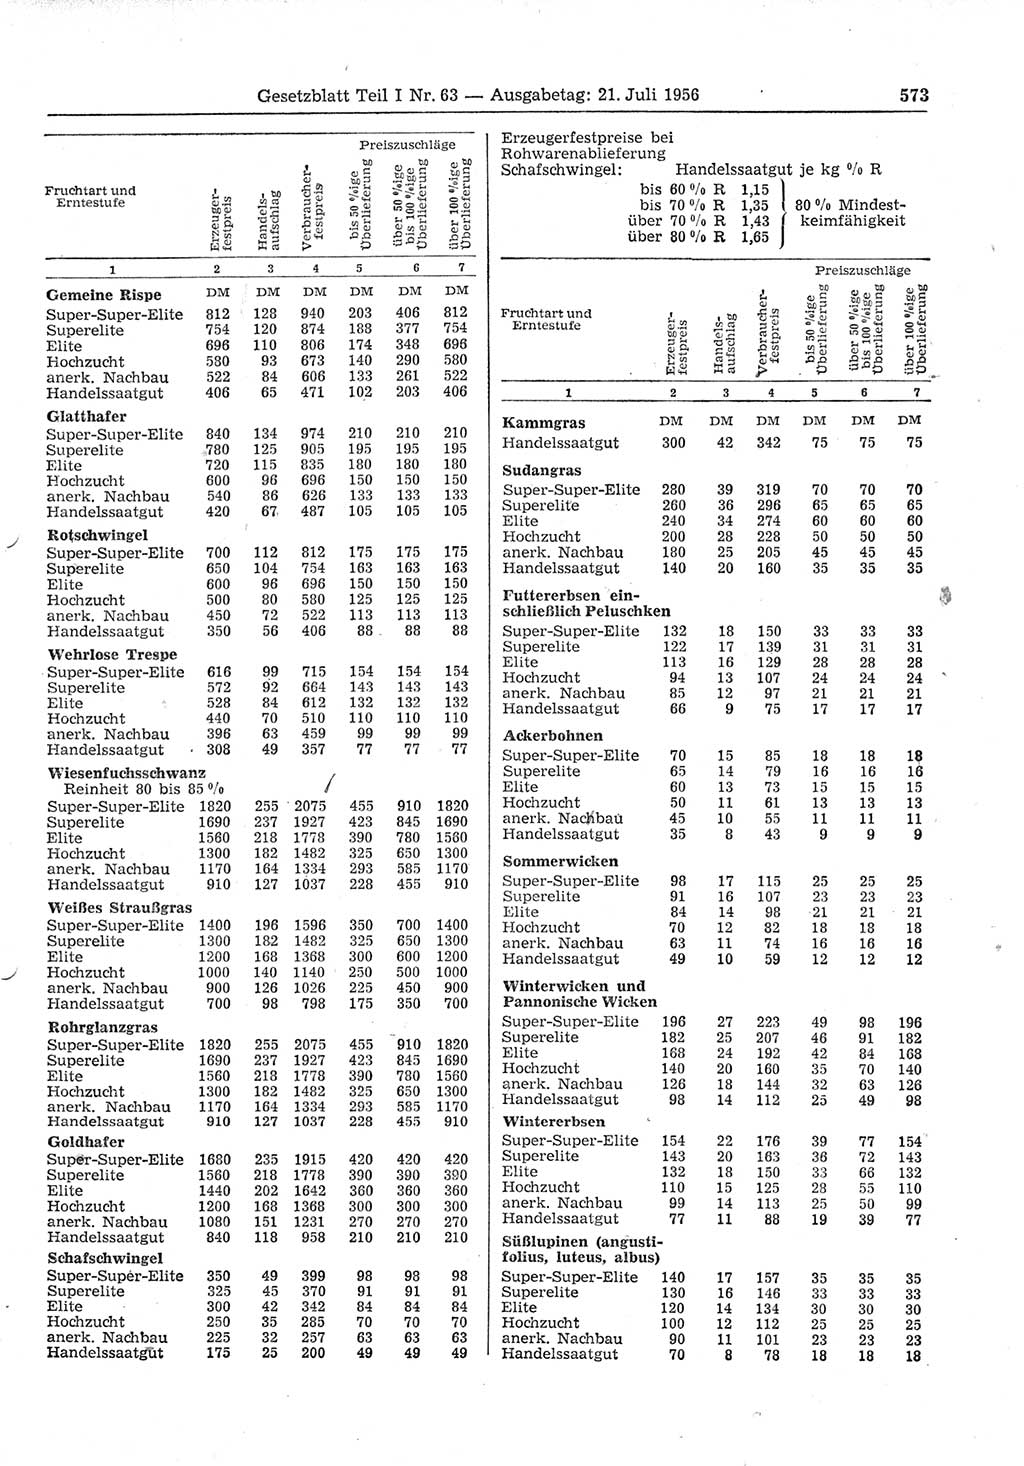 Gesetzblatt (GBl.) der Deutschen Demokratischen Republik (DDR) Teil Ⅰ 1956, Seite 573 (GBl. DDR Ⅰ 1956, S. 573)